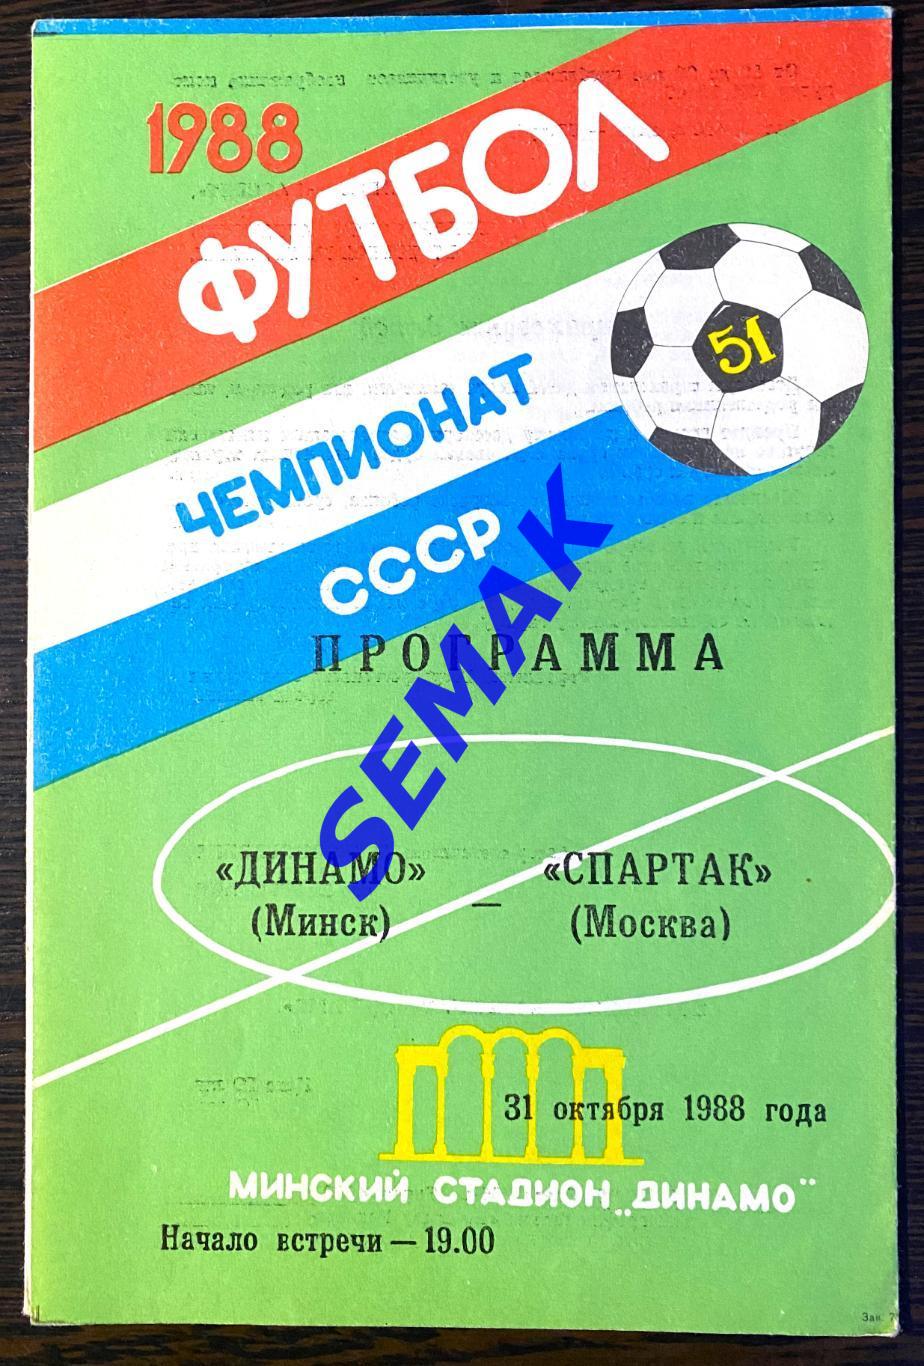 Динамо Минск - Спартак Москва - 31.10.1988